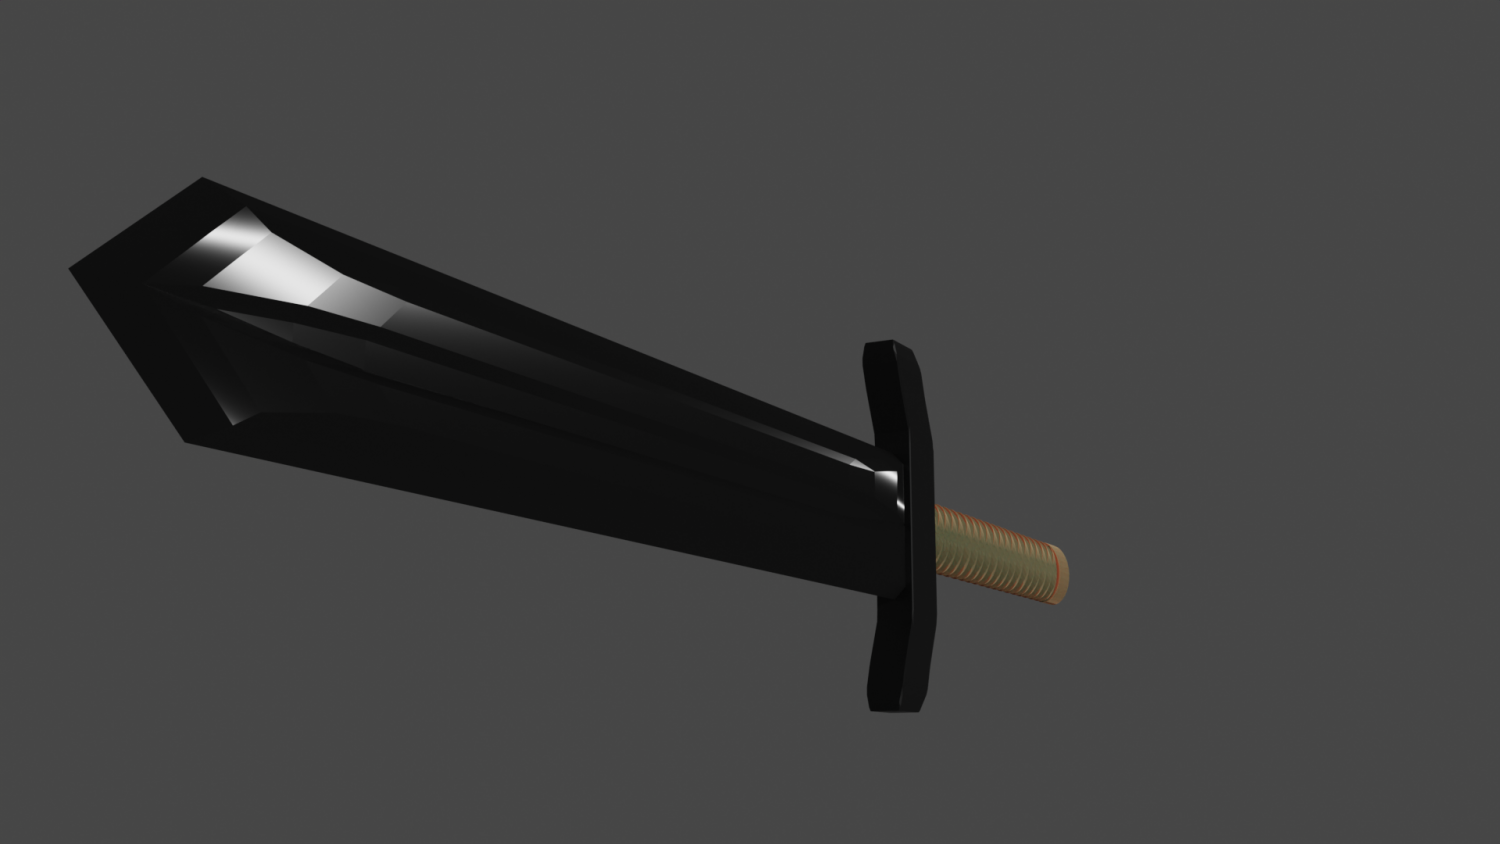 dark blade 3D Model in Melee 3DExport